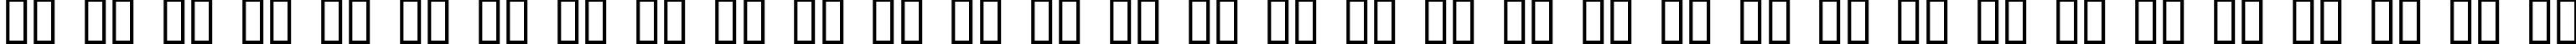 Пример написания русского алфавита шрифтом AwlScrawl